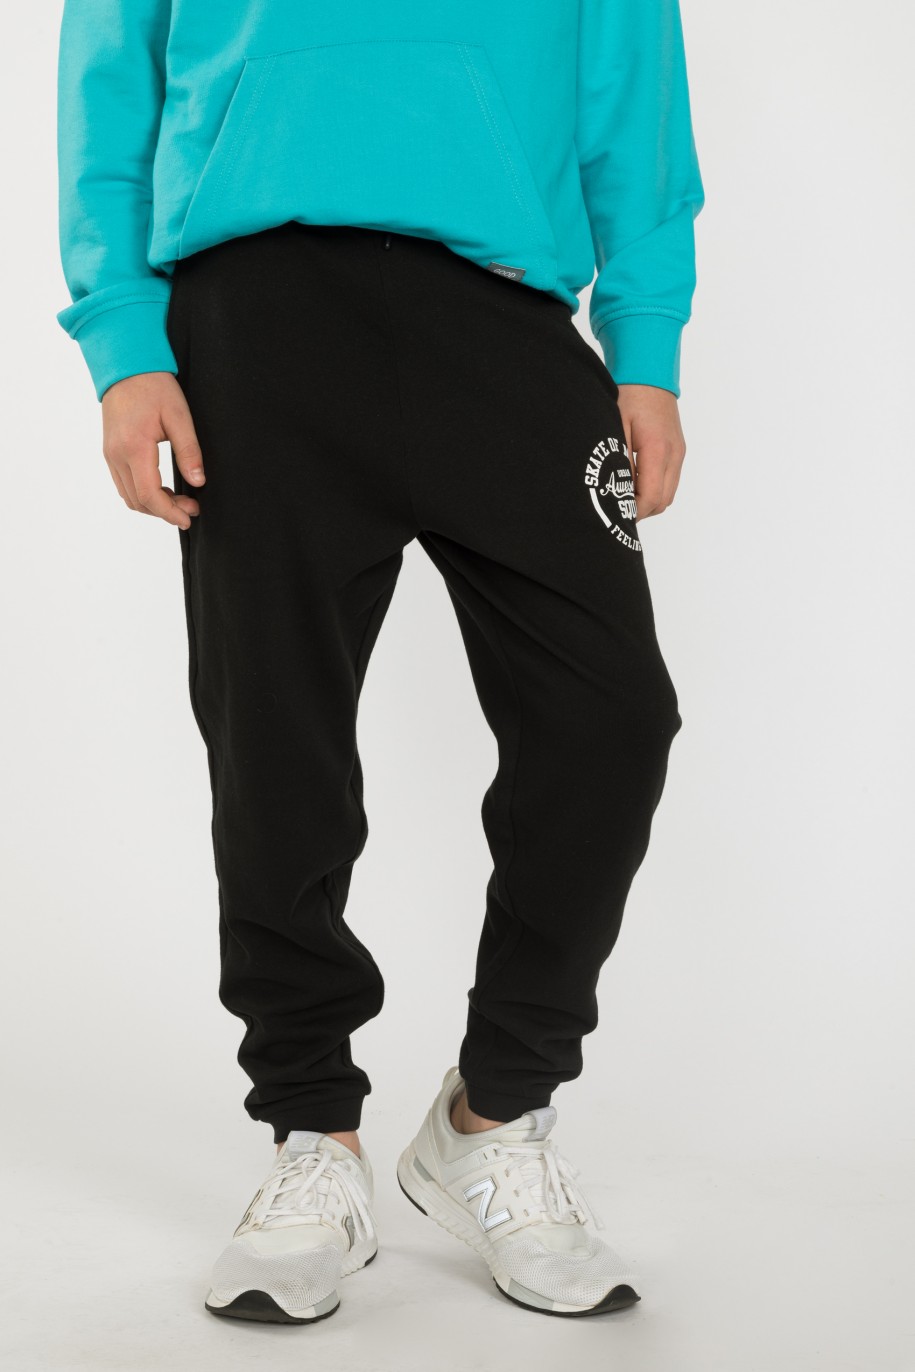 Czarne spodnie dresowe dla chłopaka SKATE OF MIND - 33136